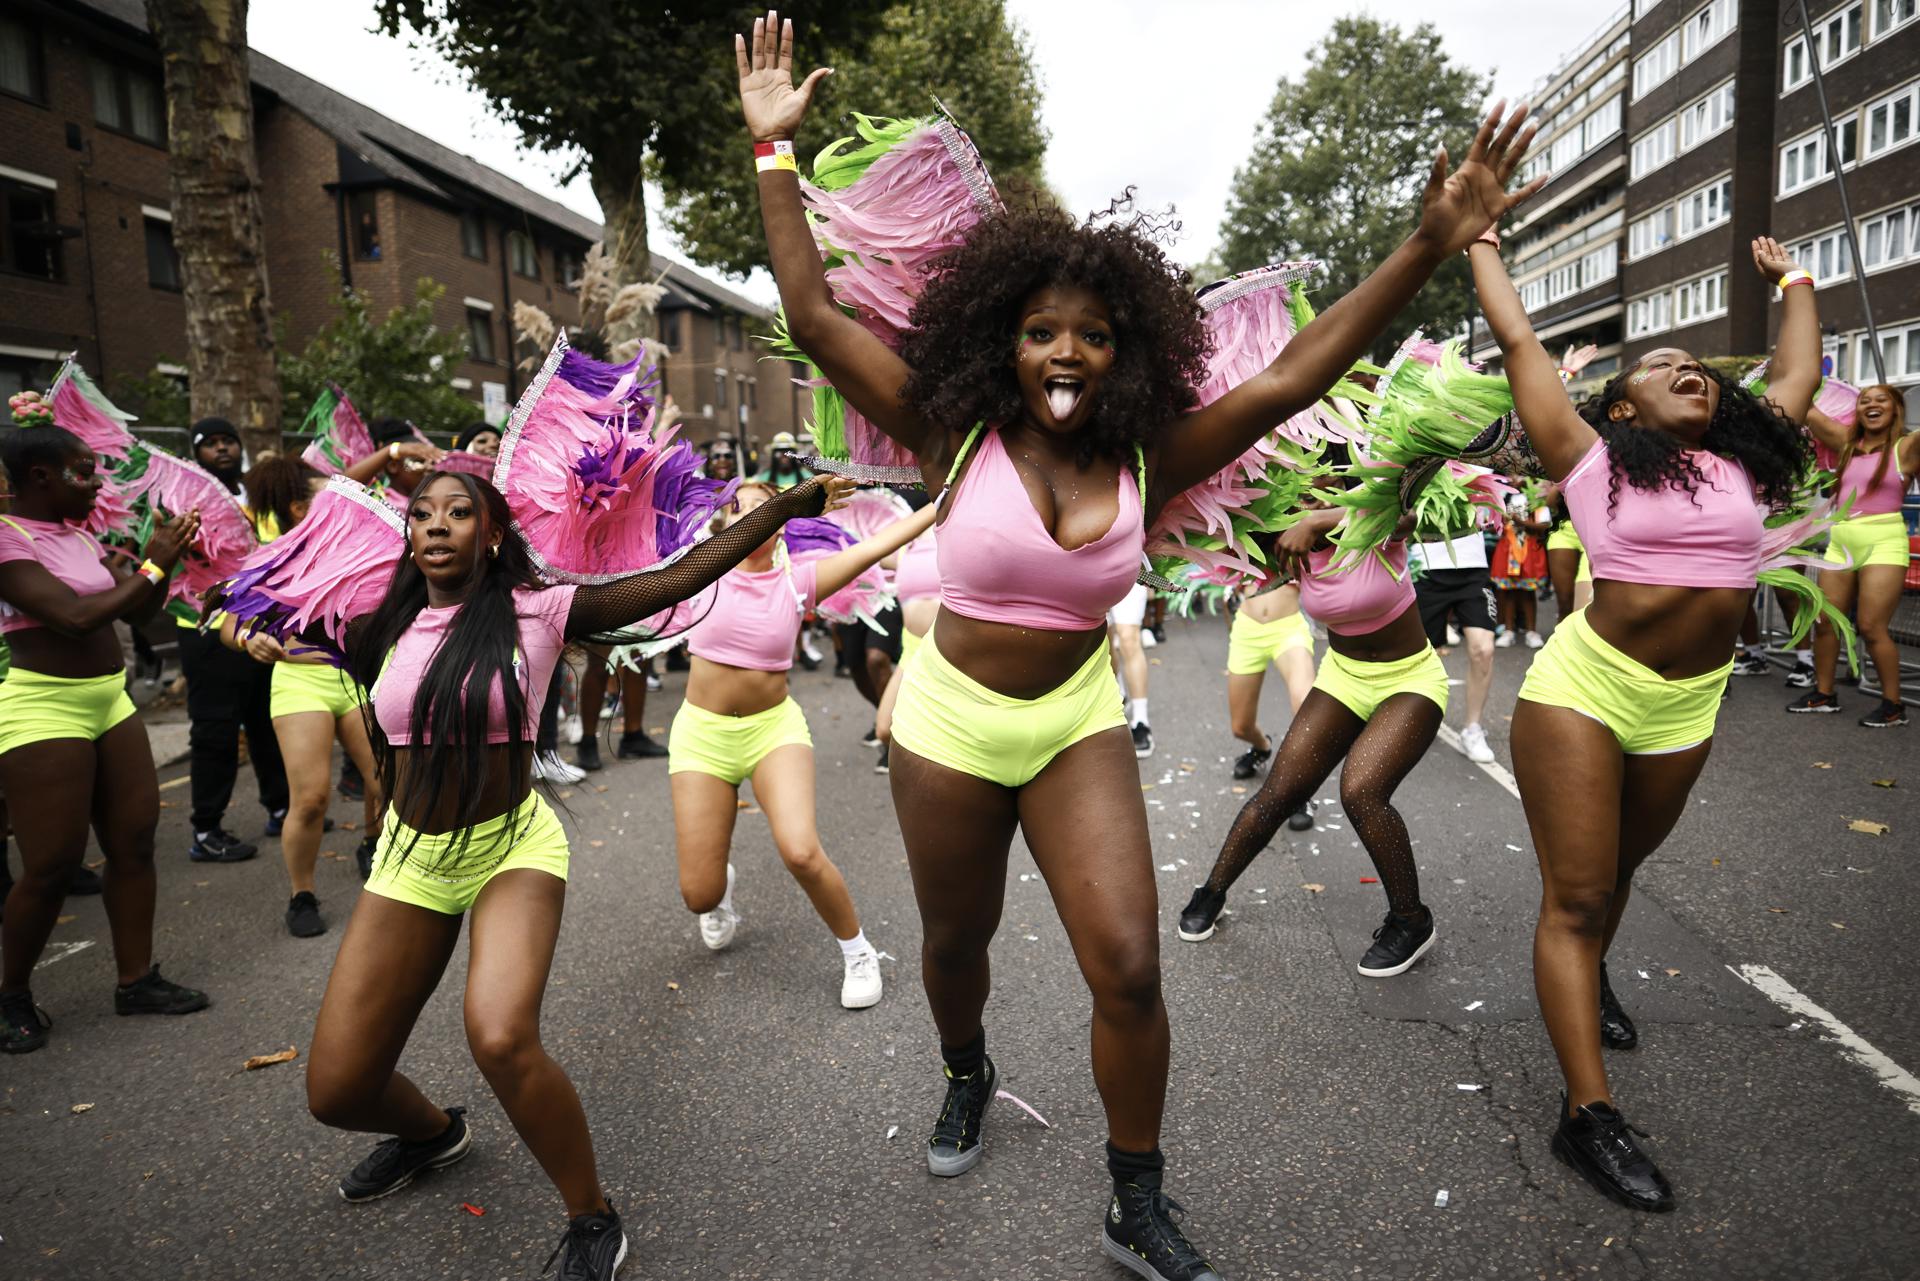 El carnaval de Notting Hill concentra multitudes para celebrar la cultura caribeña